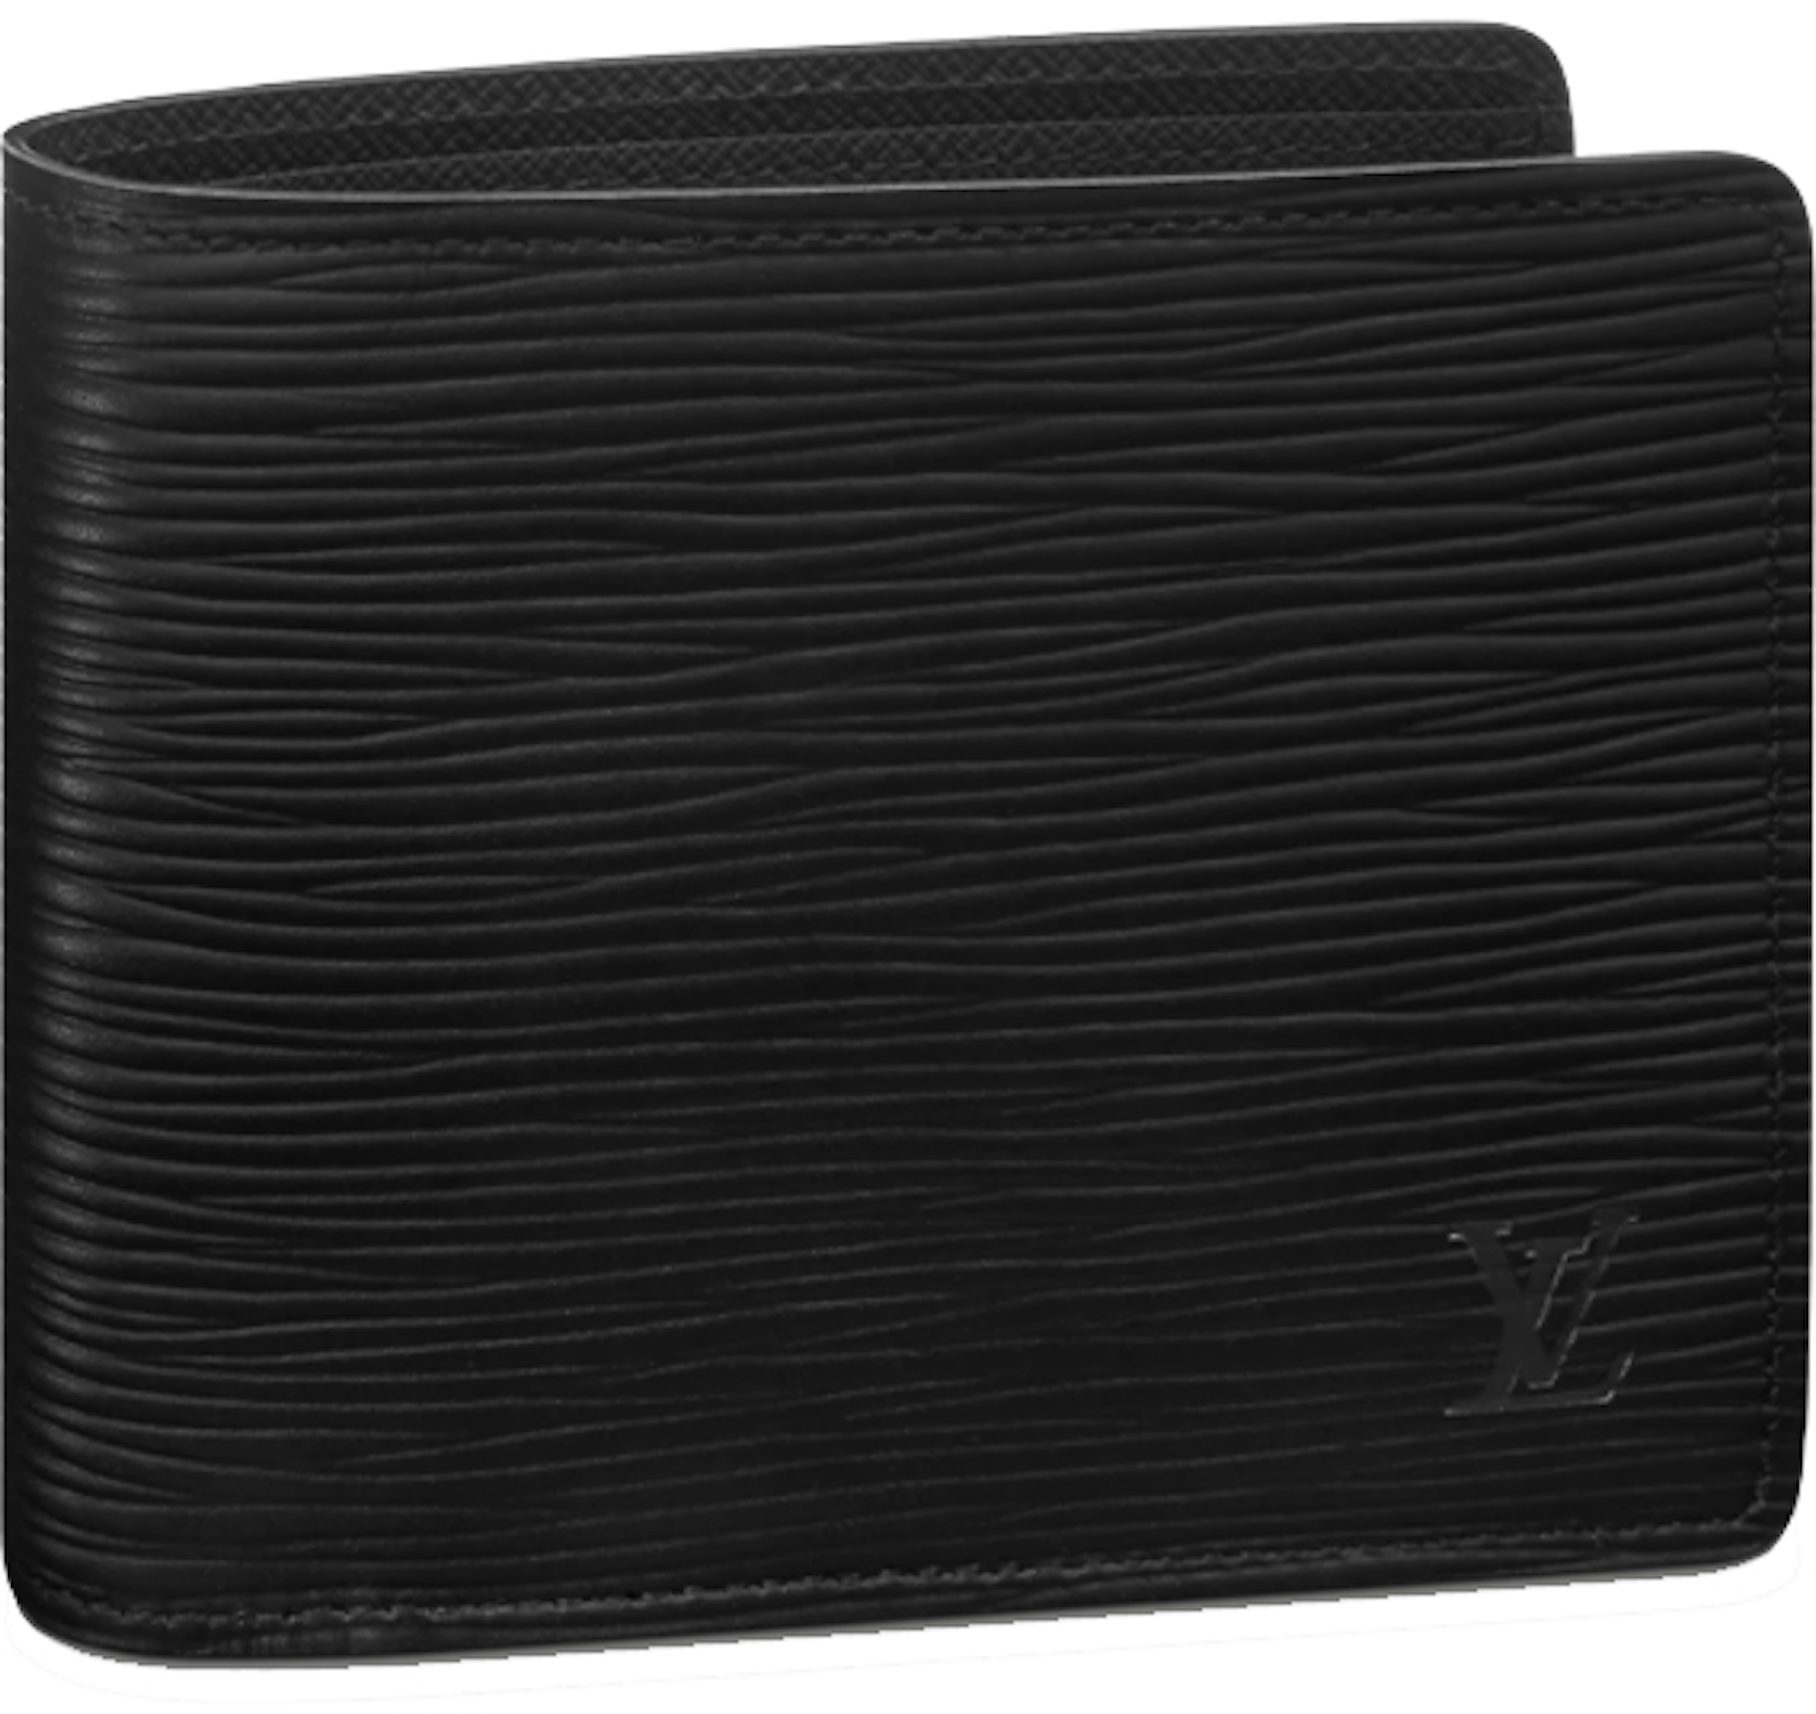 Louis Vuitton Epi Leather Multiple Wallet (SHF-12620) – LuxeDH